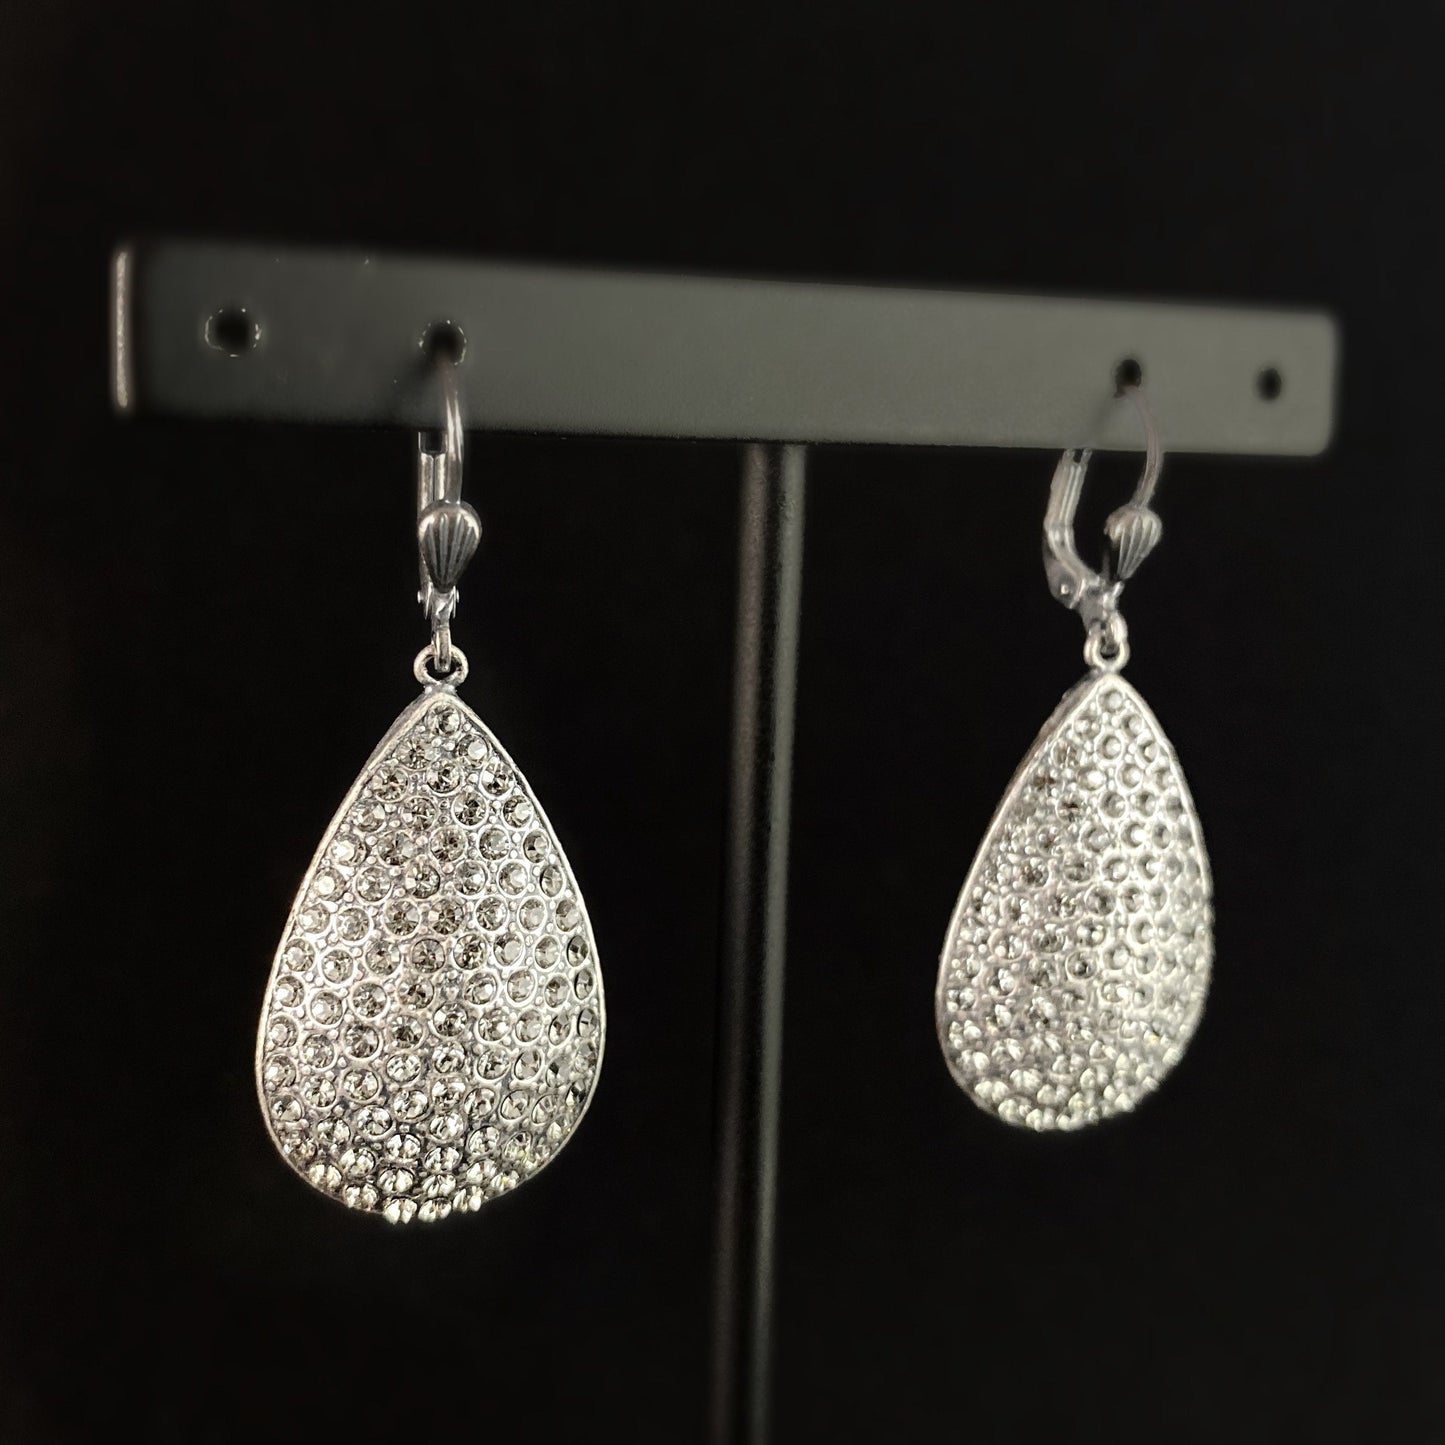 Teardrop Shape Swarovski Crystal Earrings, Clear - La Vie Parisienne by Catherine Popesco